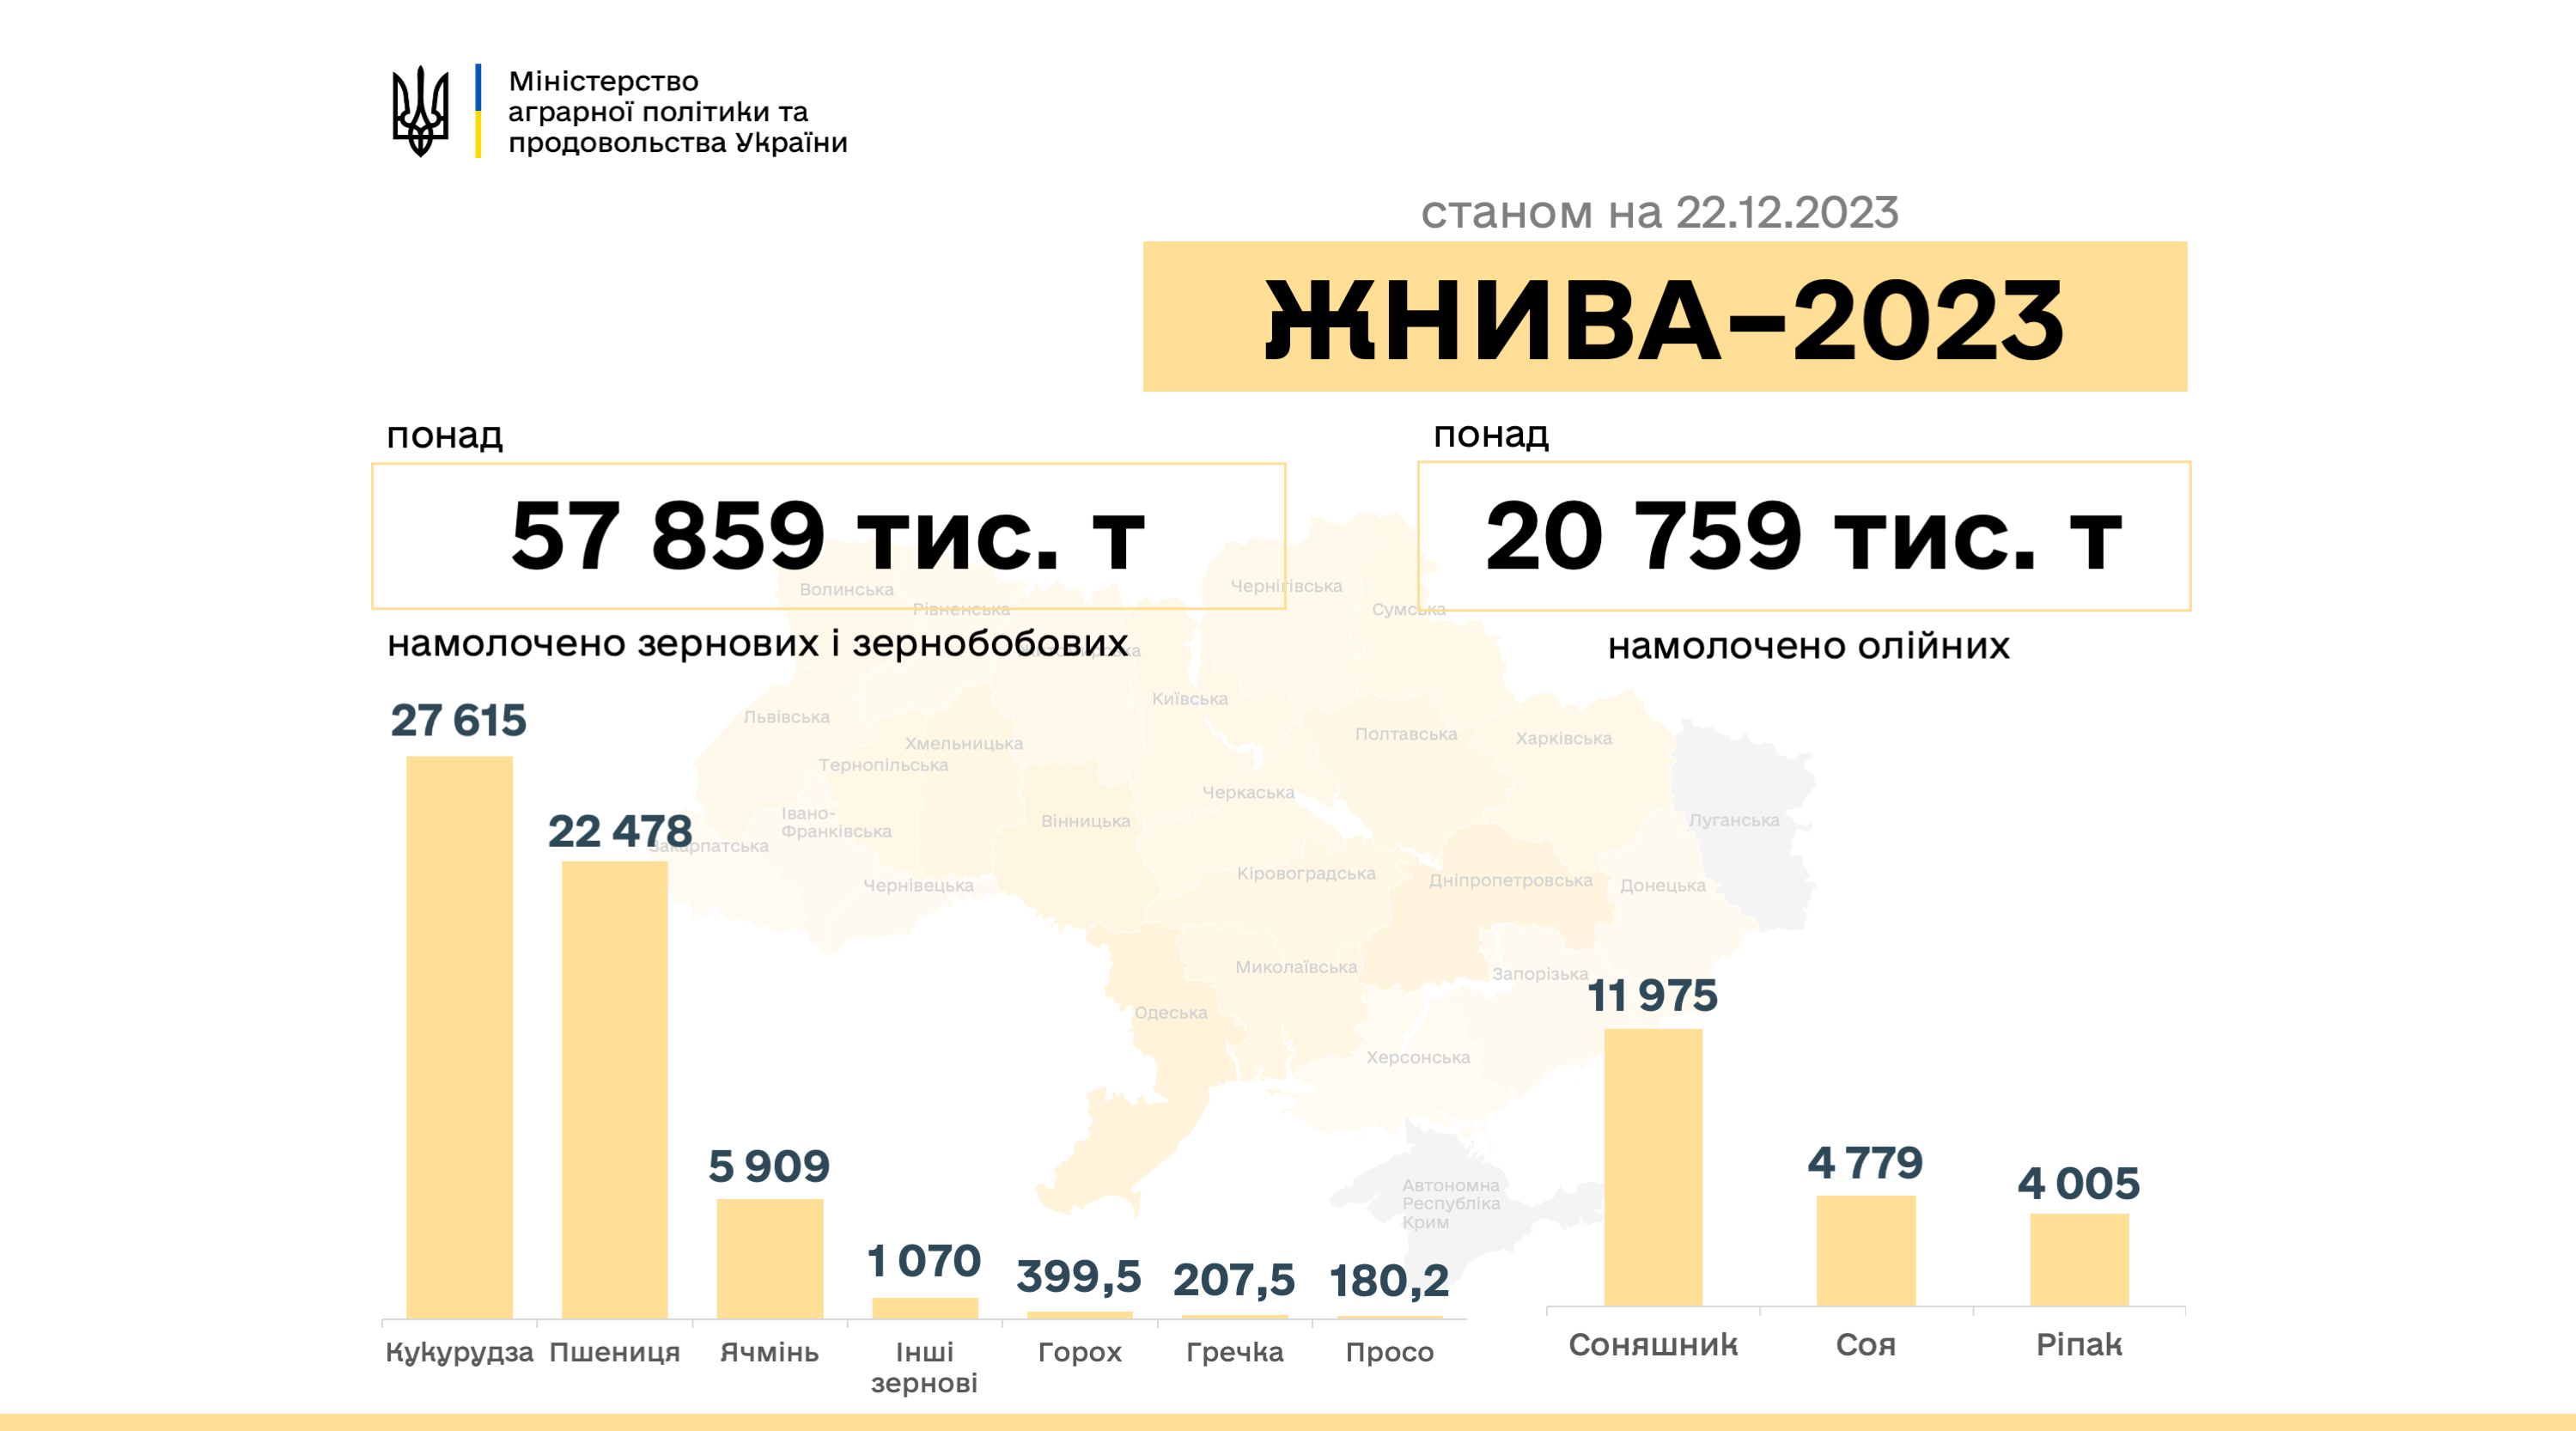 Фото Міністерства аграрної політики та продовольства України. В Україні намолочено 78,7 млн тонн нового врожаю.